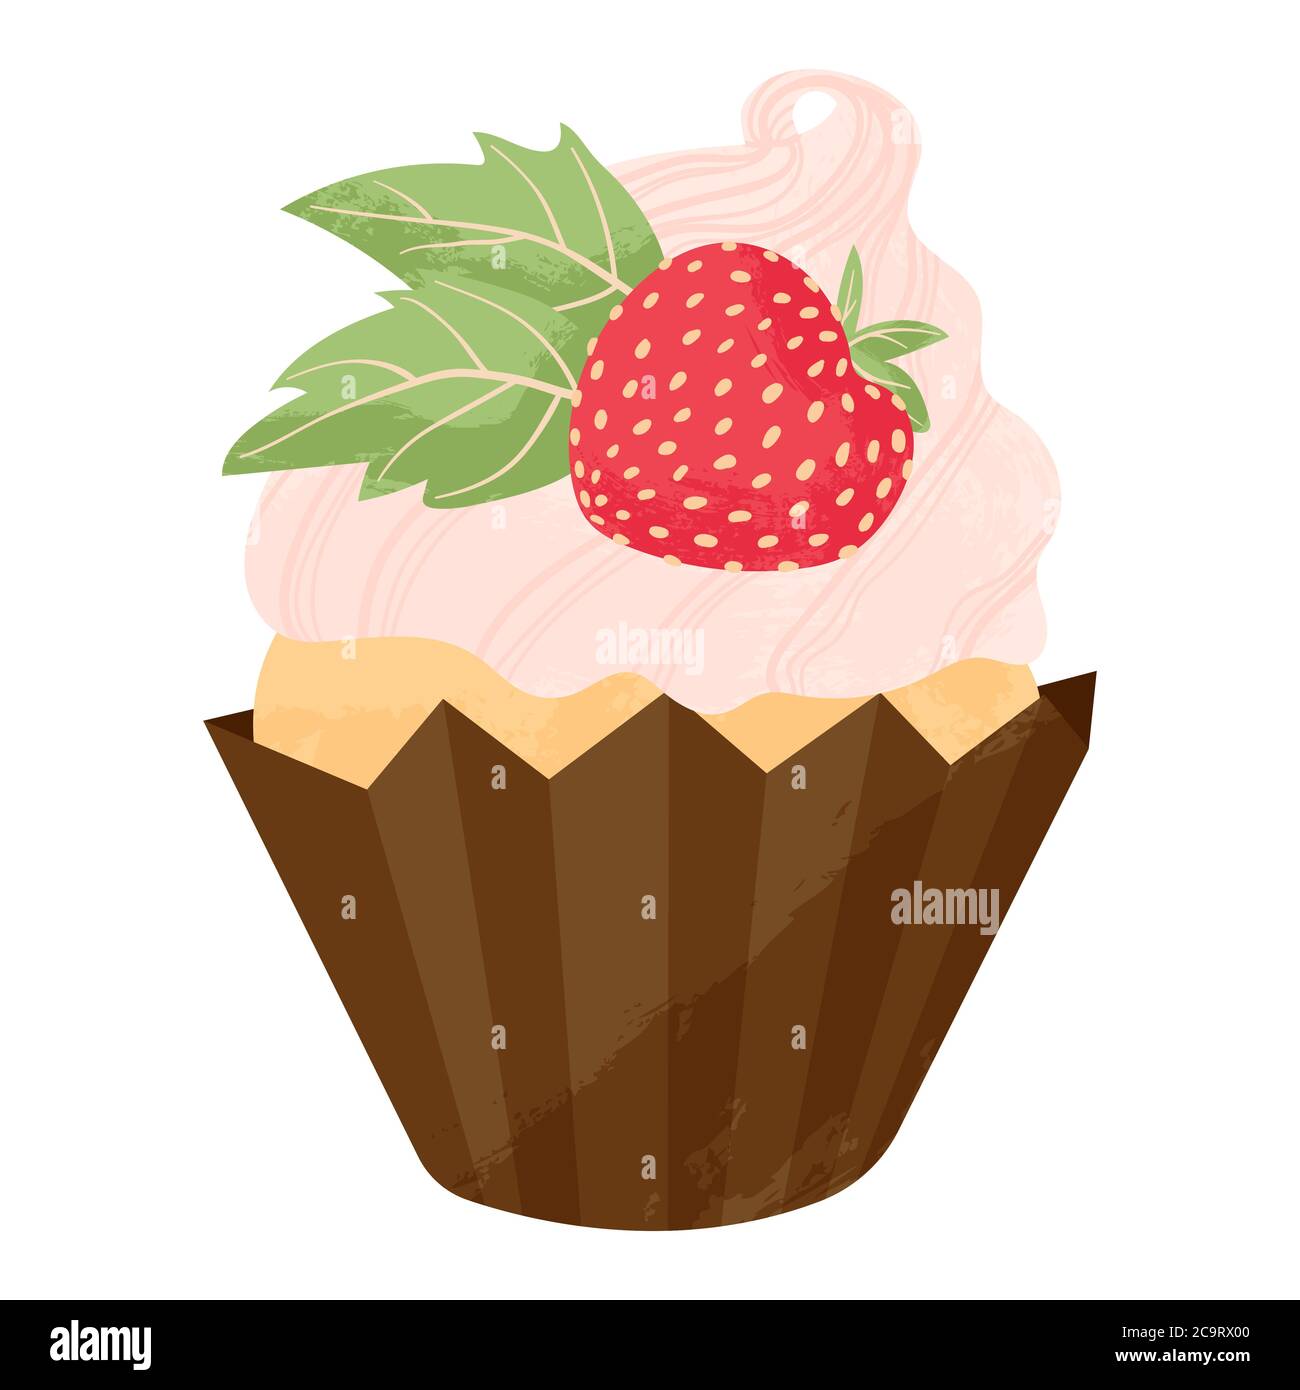 Einhandgezogener Cupcake oder Muffin mit Erdbeere und Schlagsahne. Vektor-Cartoon-Illustration in flachem Design. Element für Grußkarten, Poster Stock Vektor